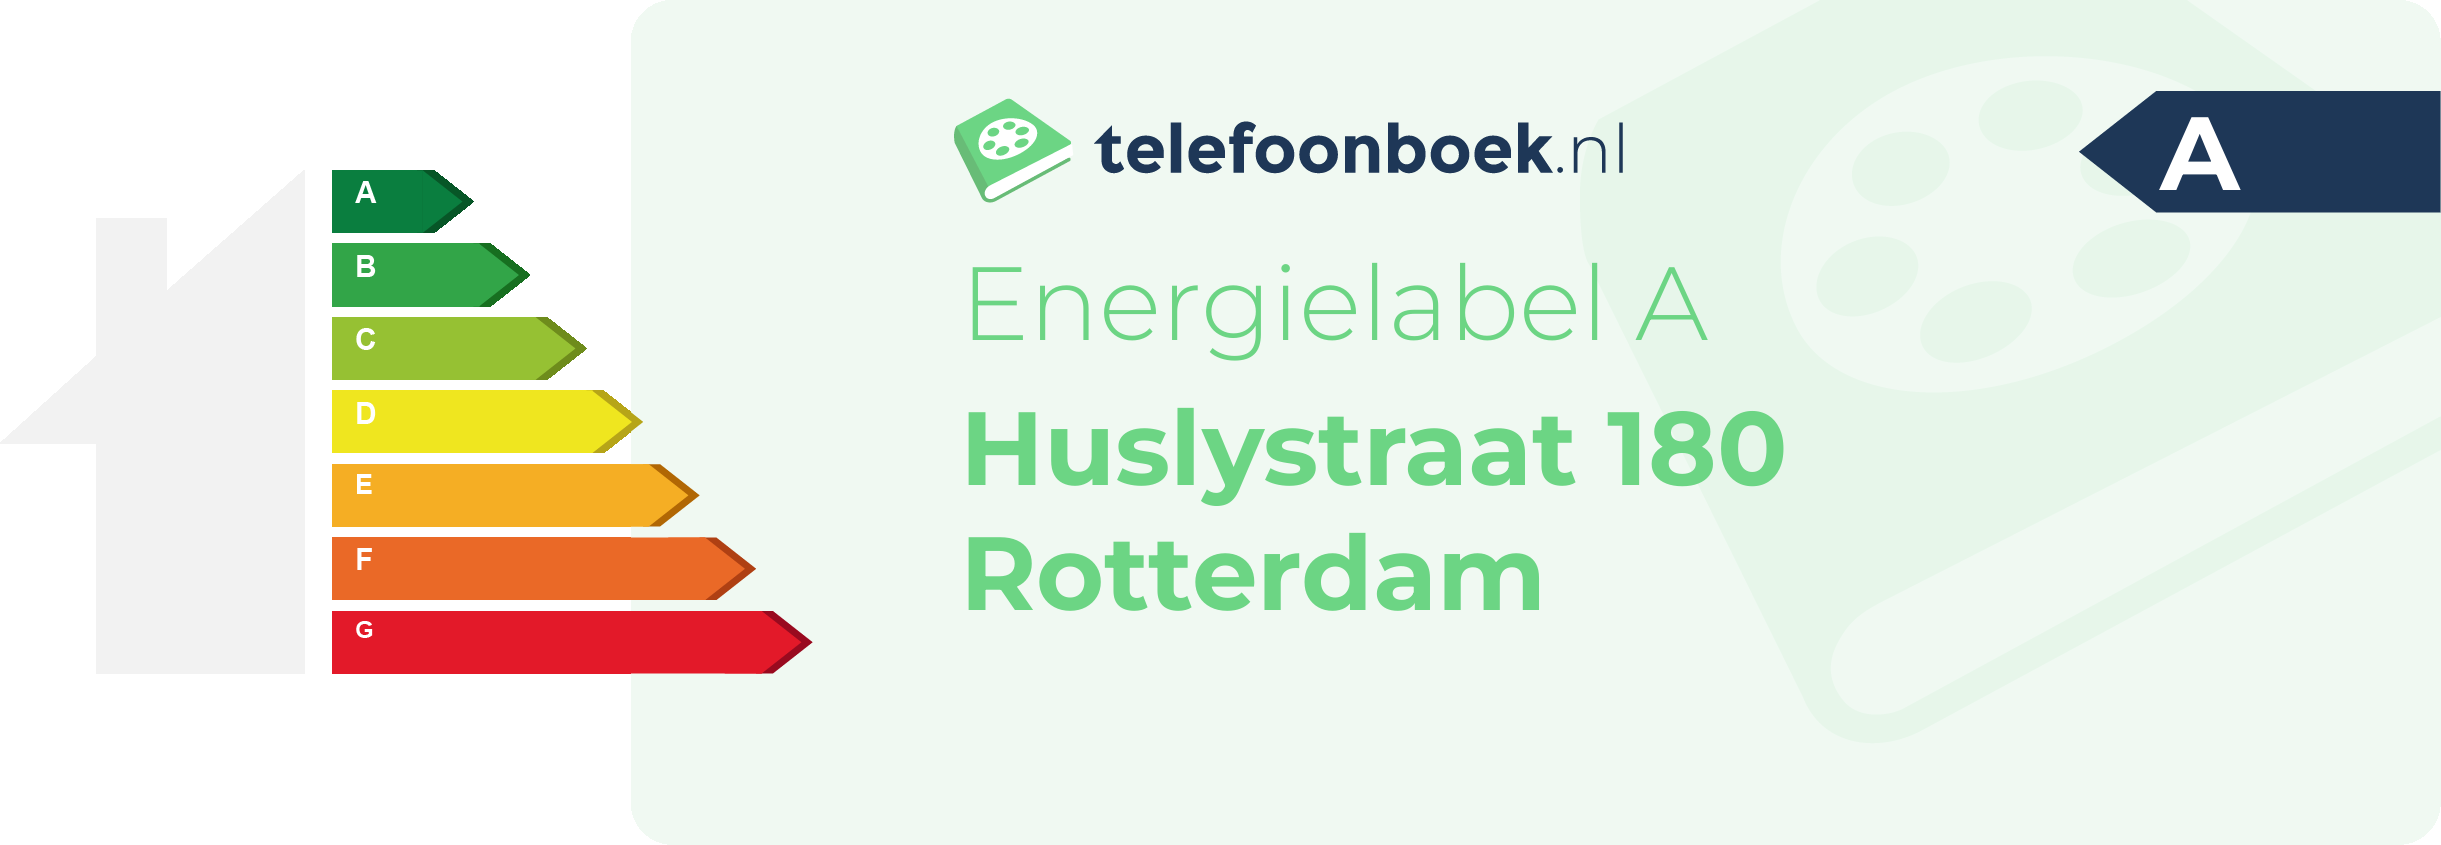 Energielabel Huslystraat 180 Rotterdam